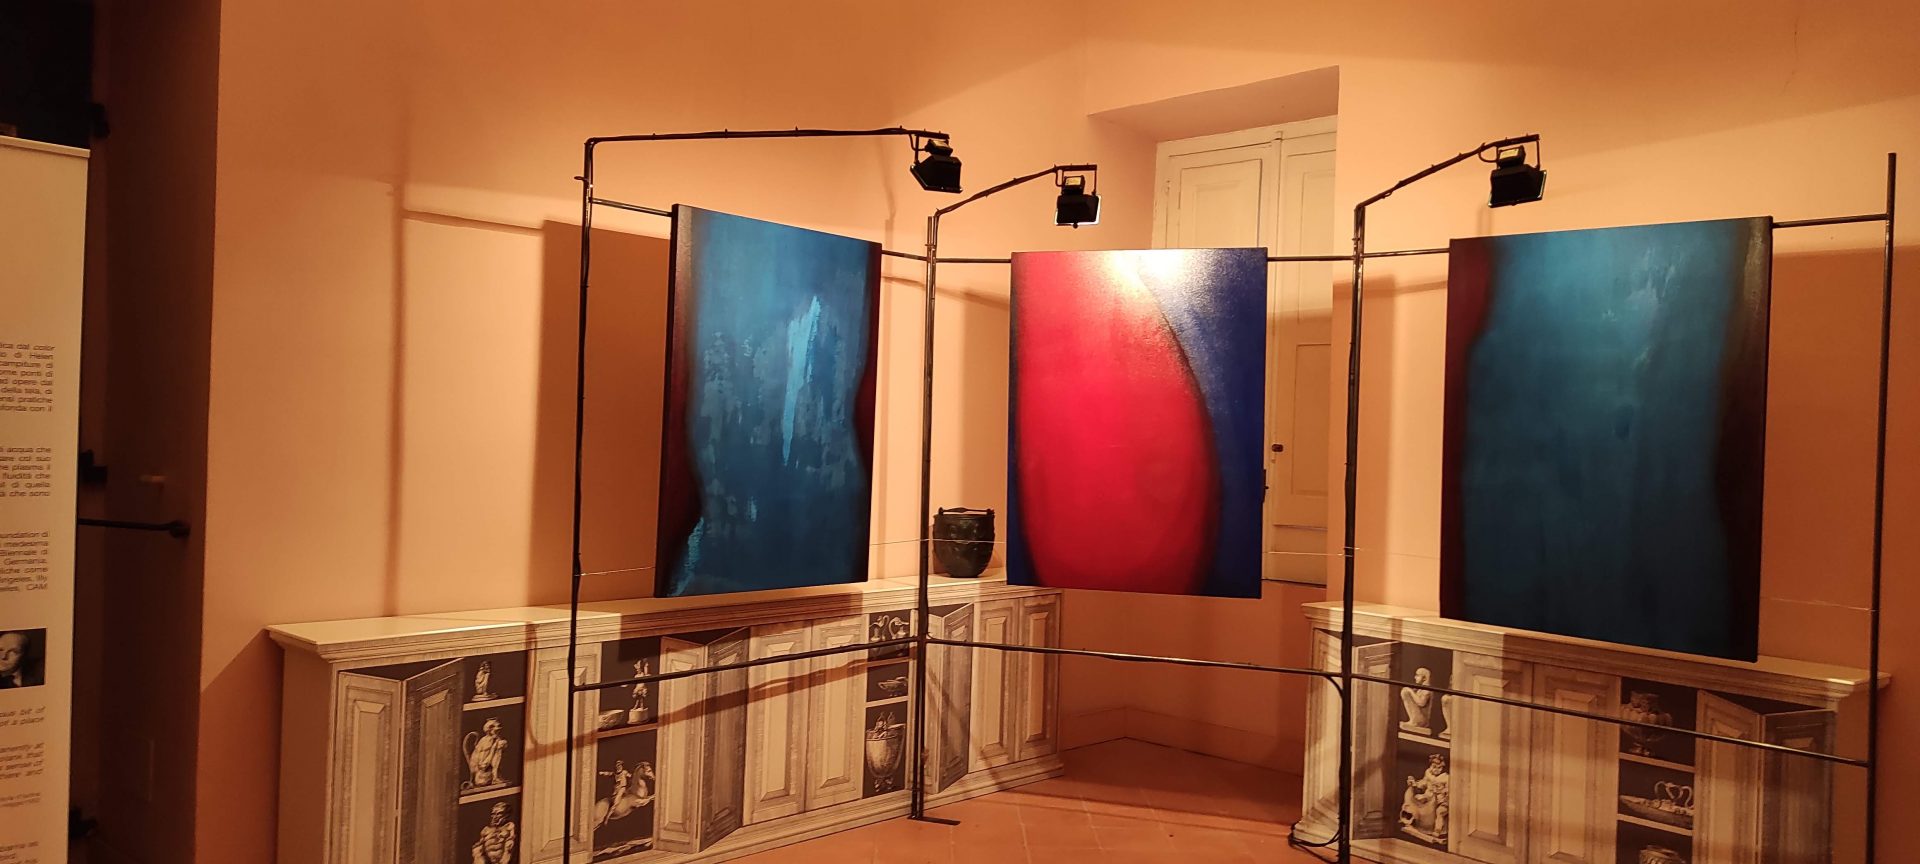 Alla Reggia di Portici la mostra Inspirational the Influence of Place